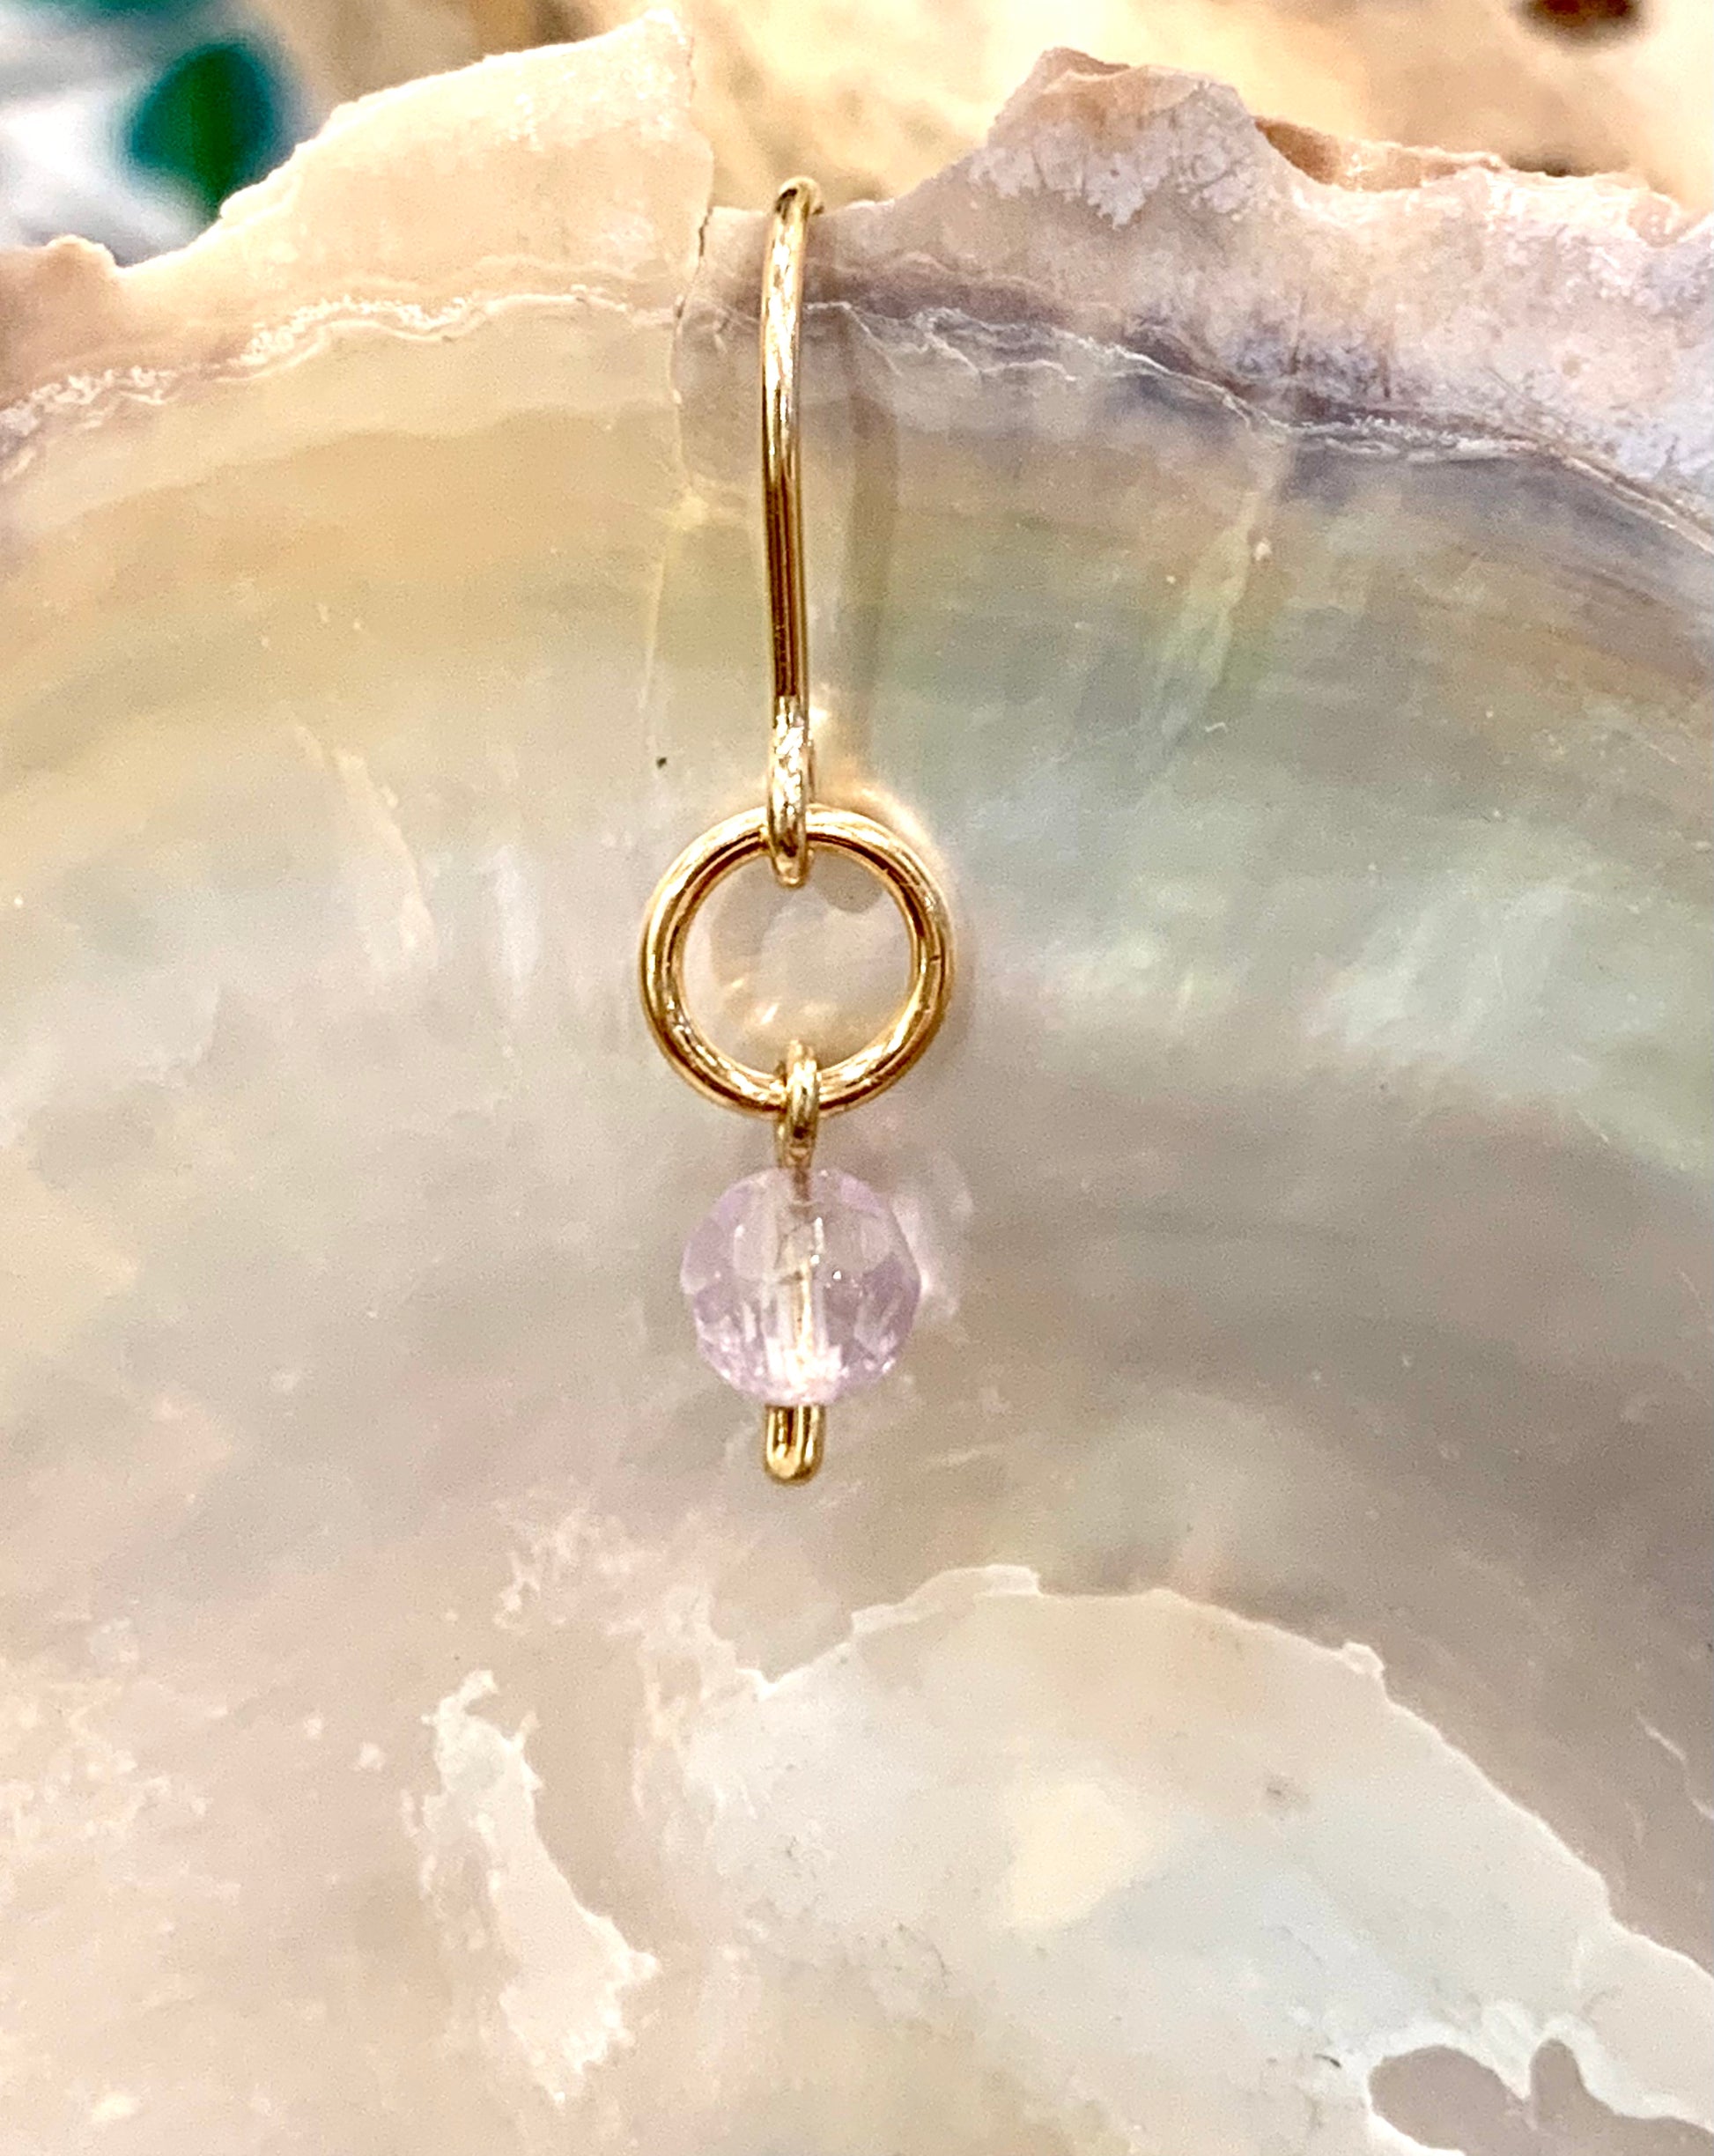 Mini gemstone hook earrings, amethyst earrings, ametrine earrings in gold